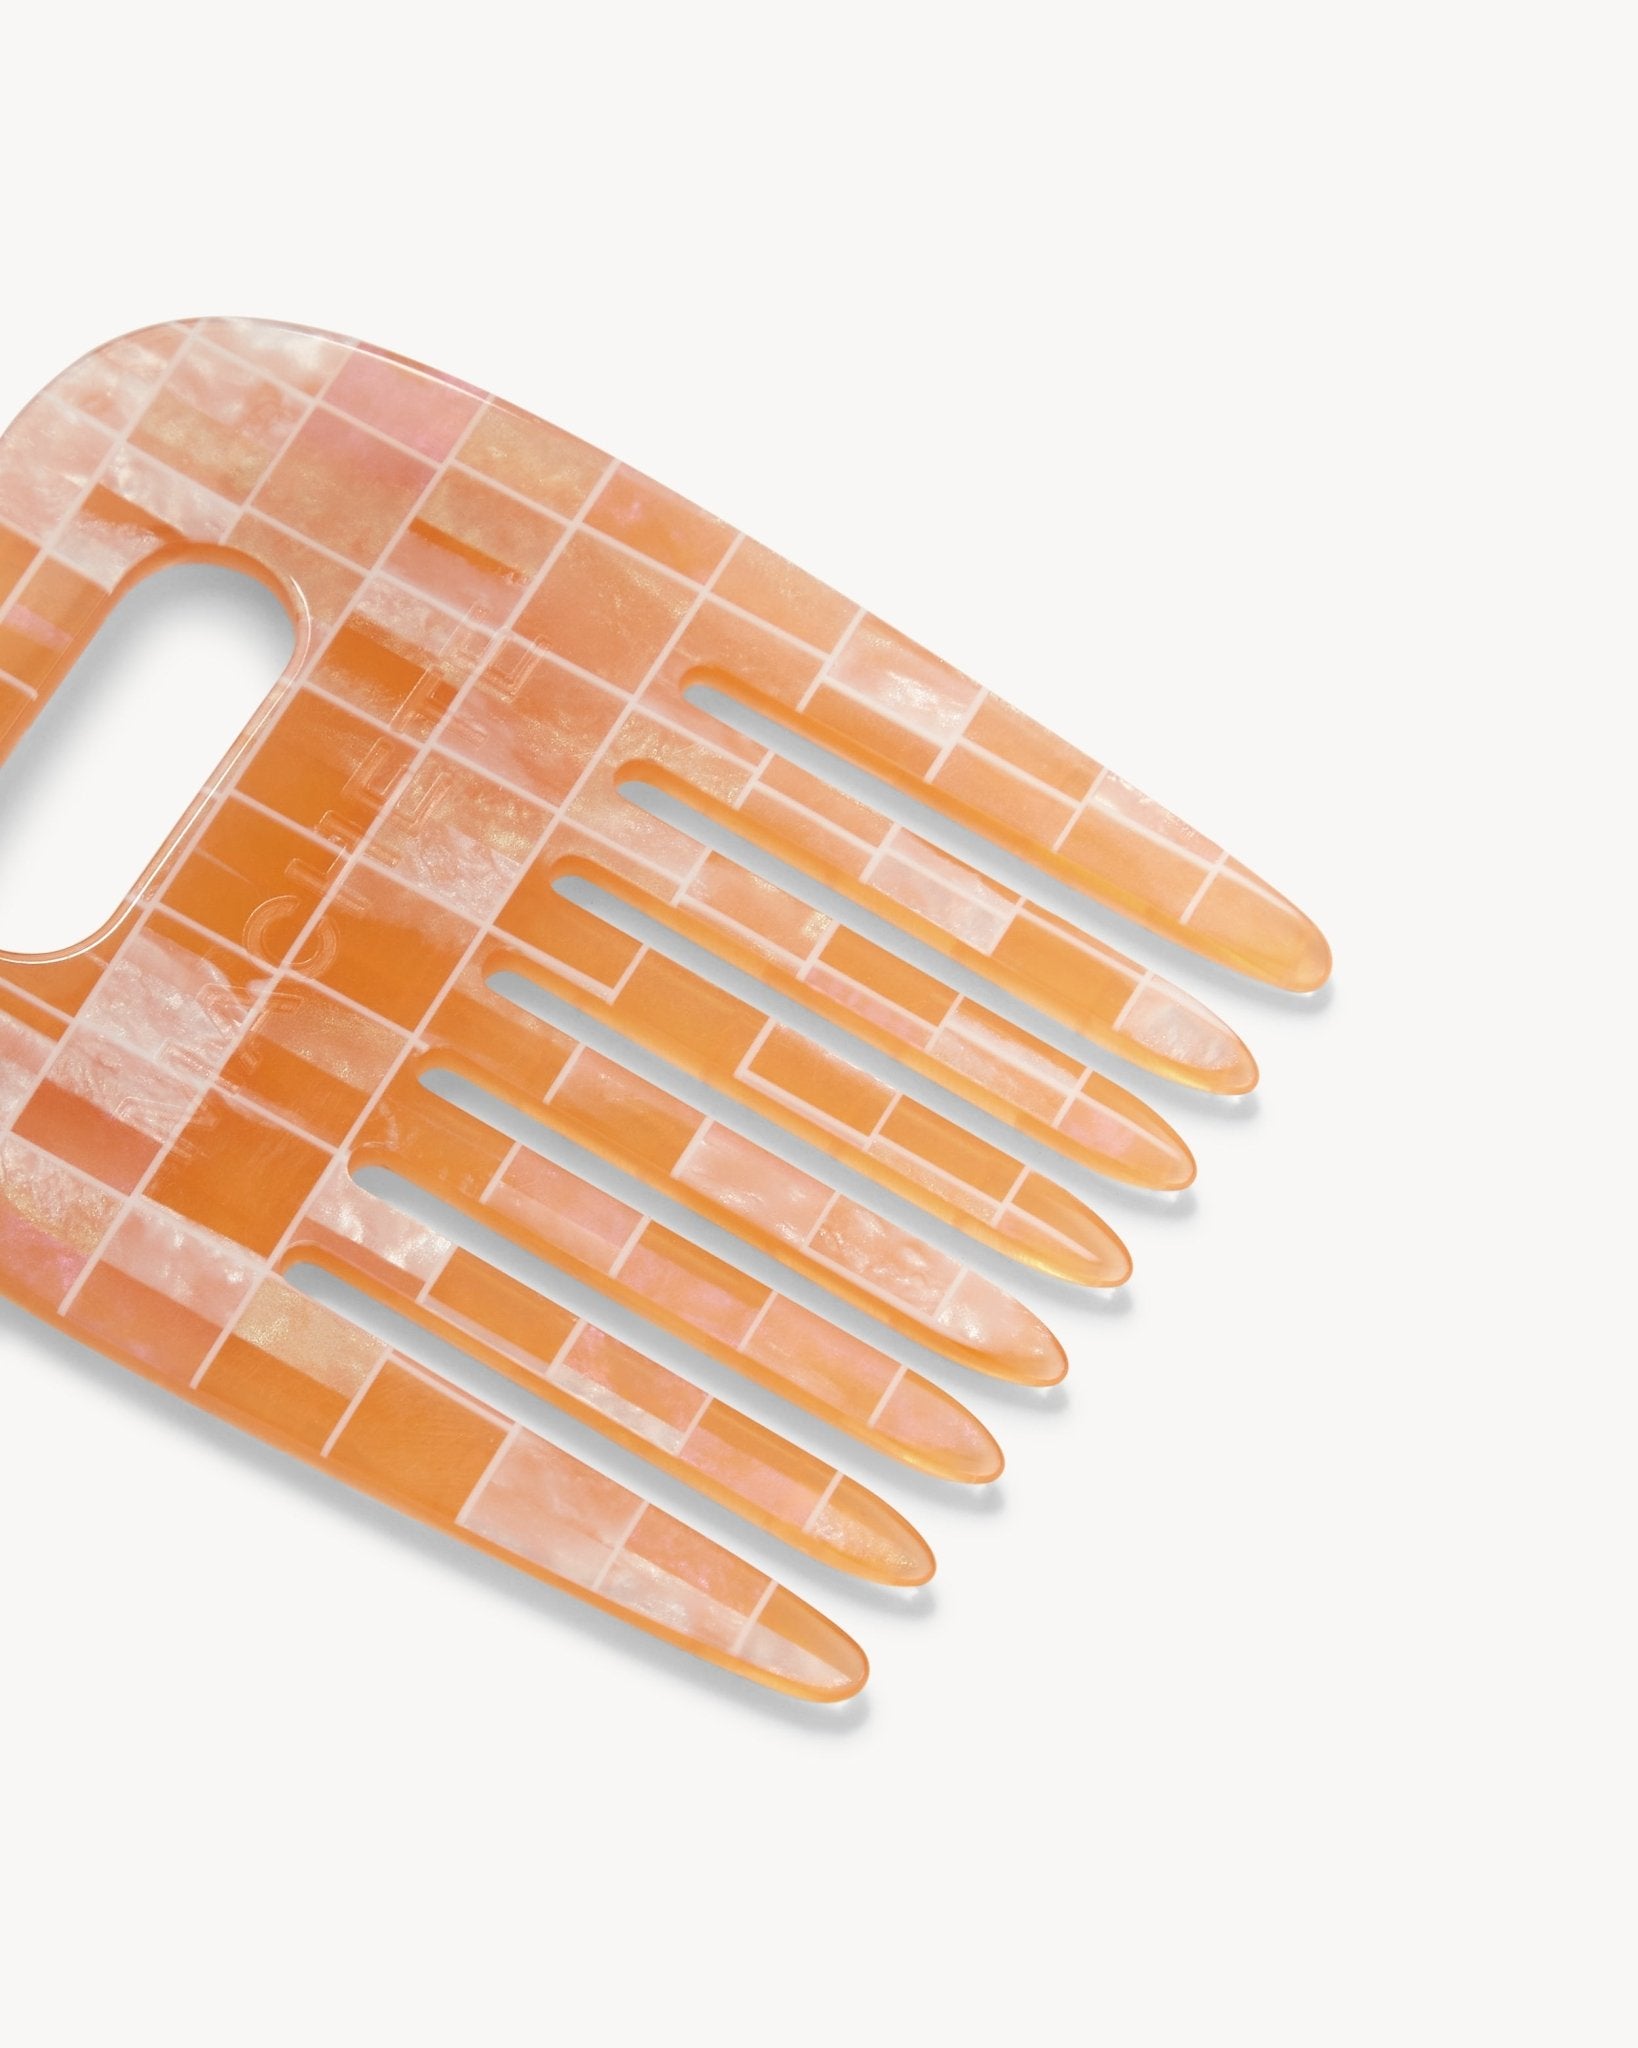 No. 4 Comb in Apricot Shell Checker - MACHETE